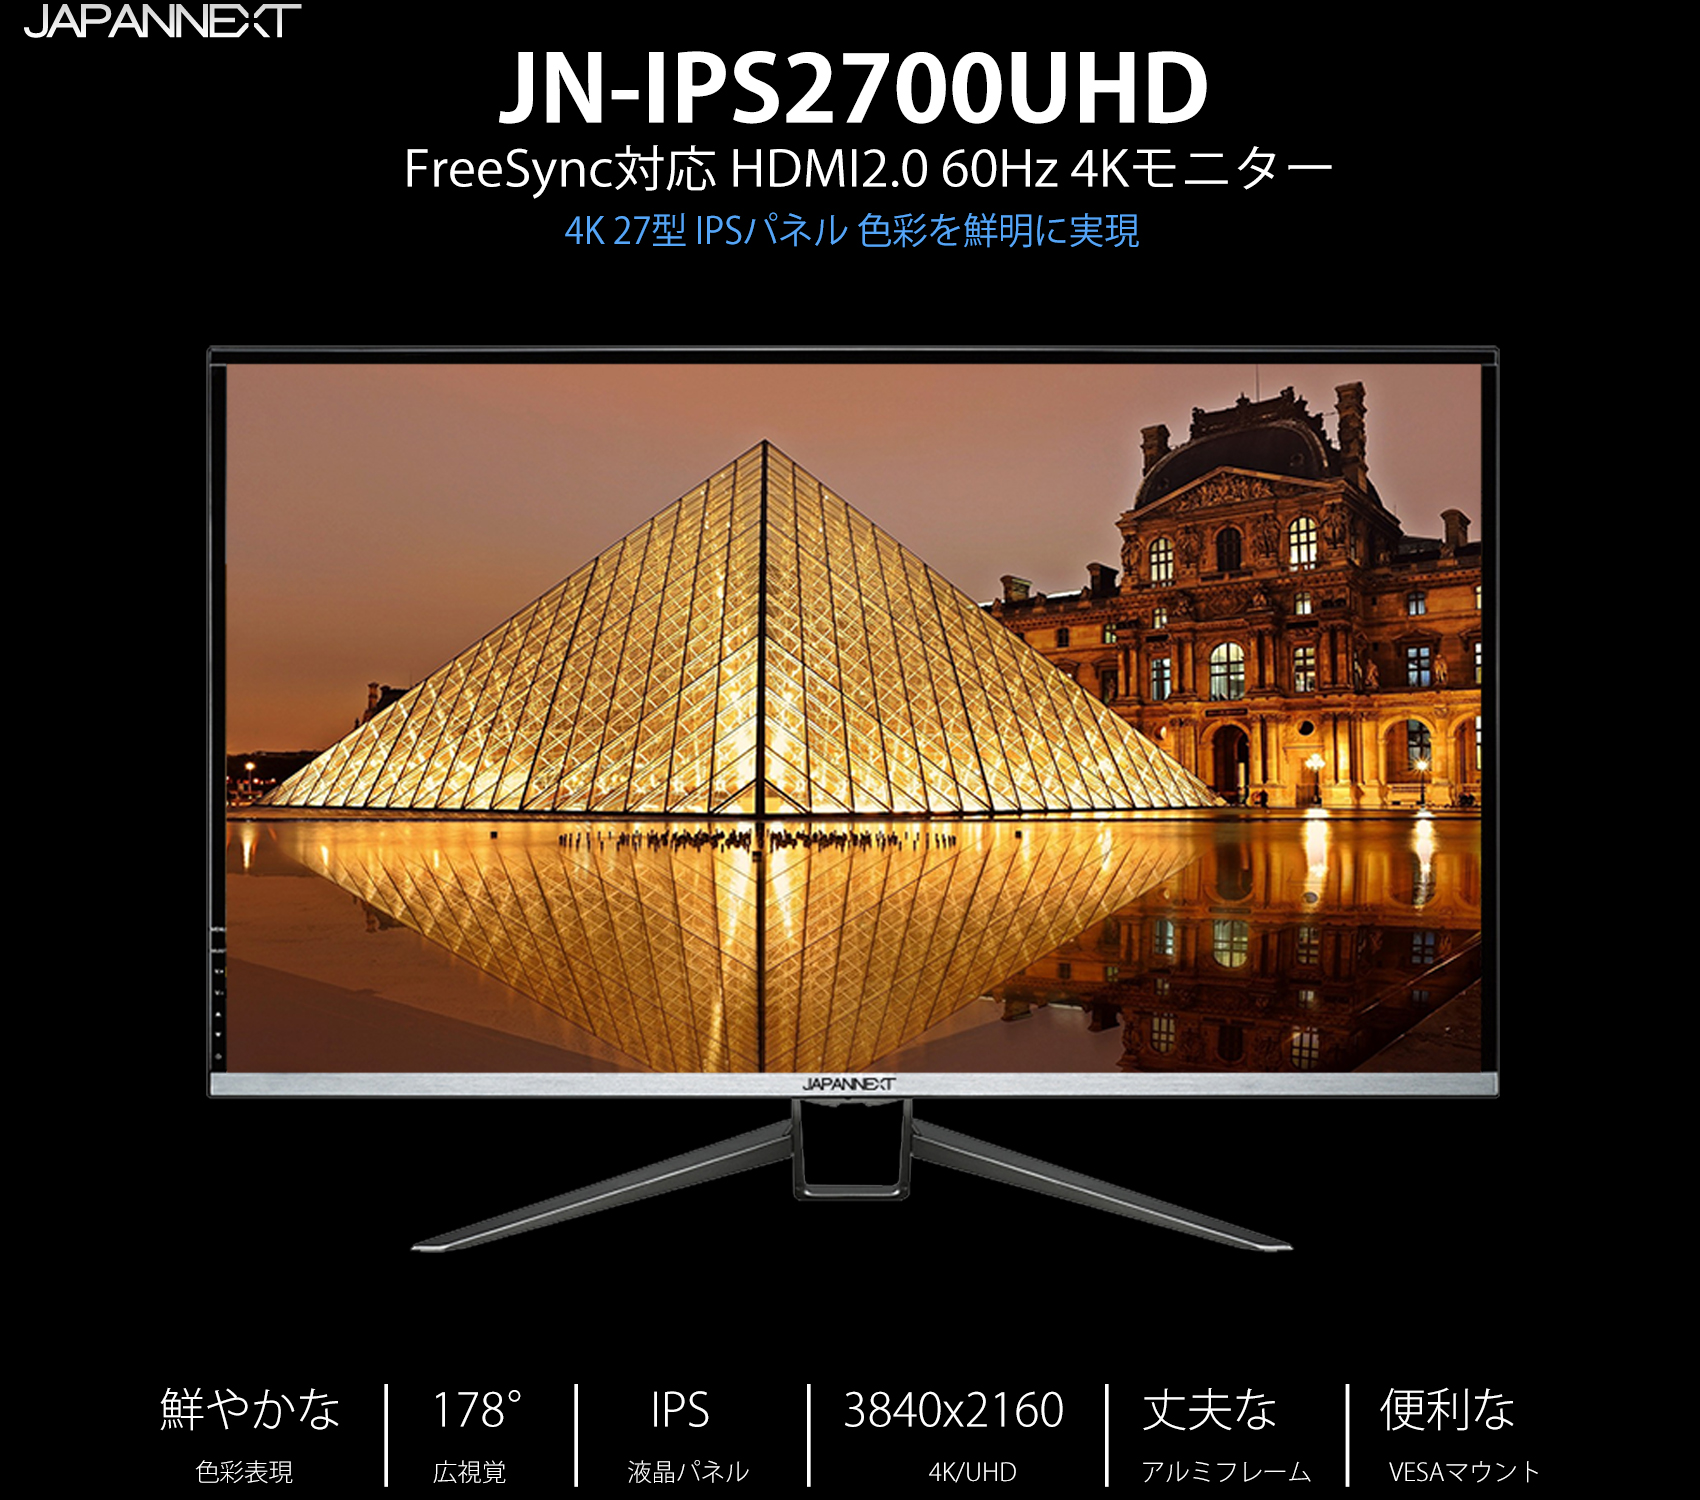 生産終了〉JAPANNEXT JN-IPS2700UHD 4K 27インチIPS液晶ディスプレイ